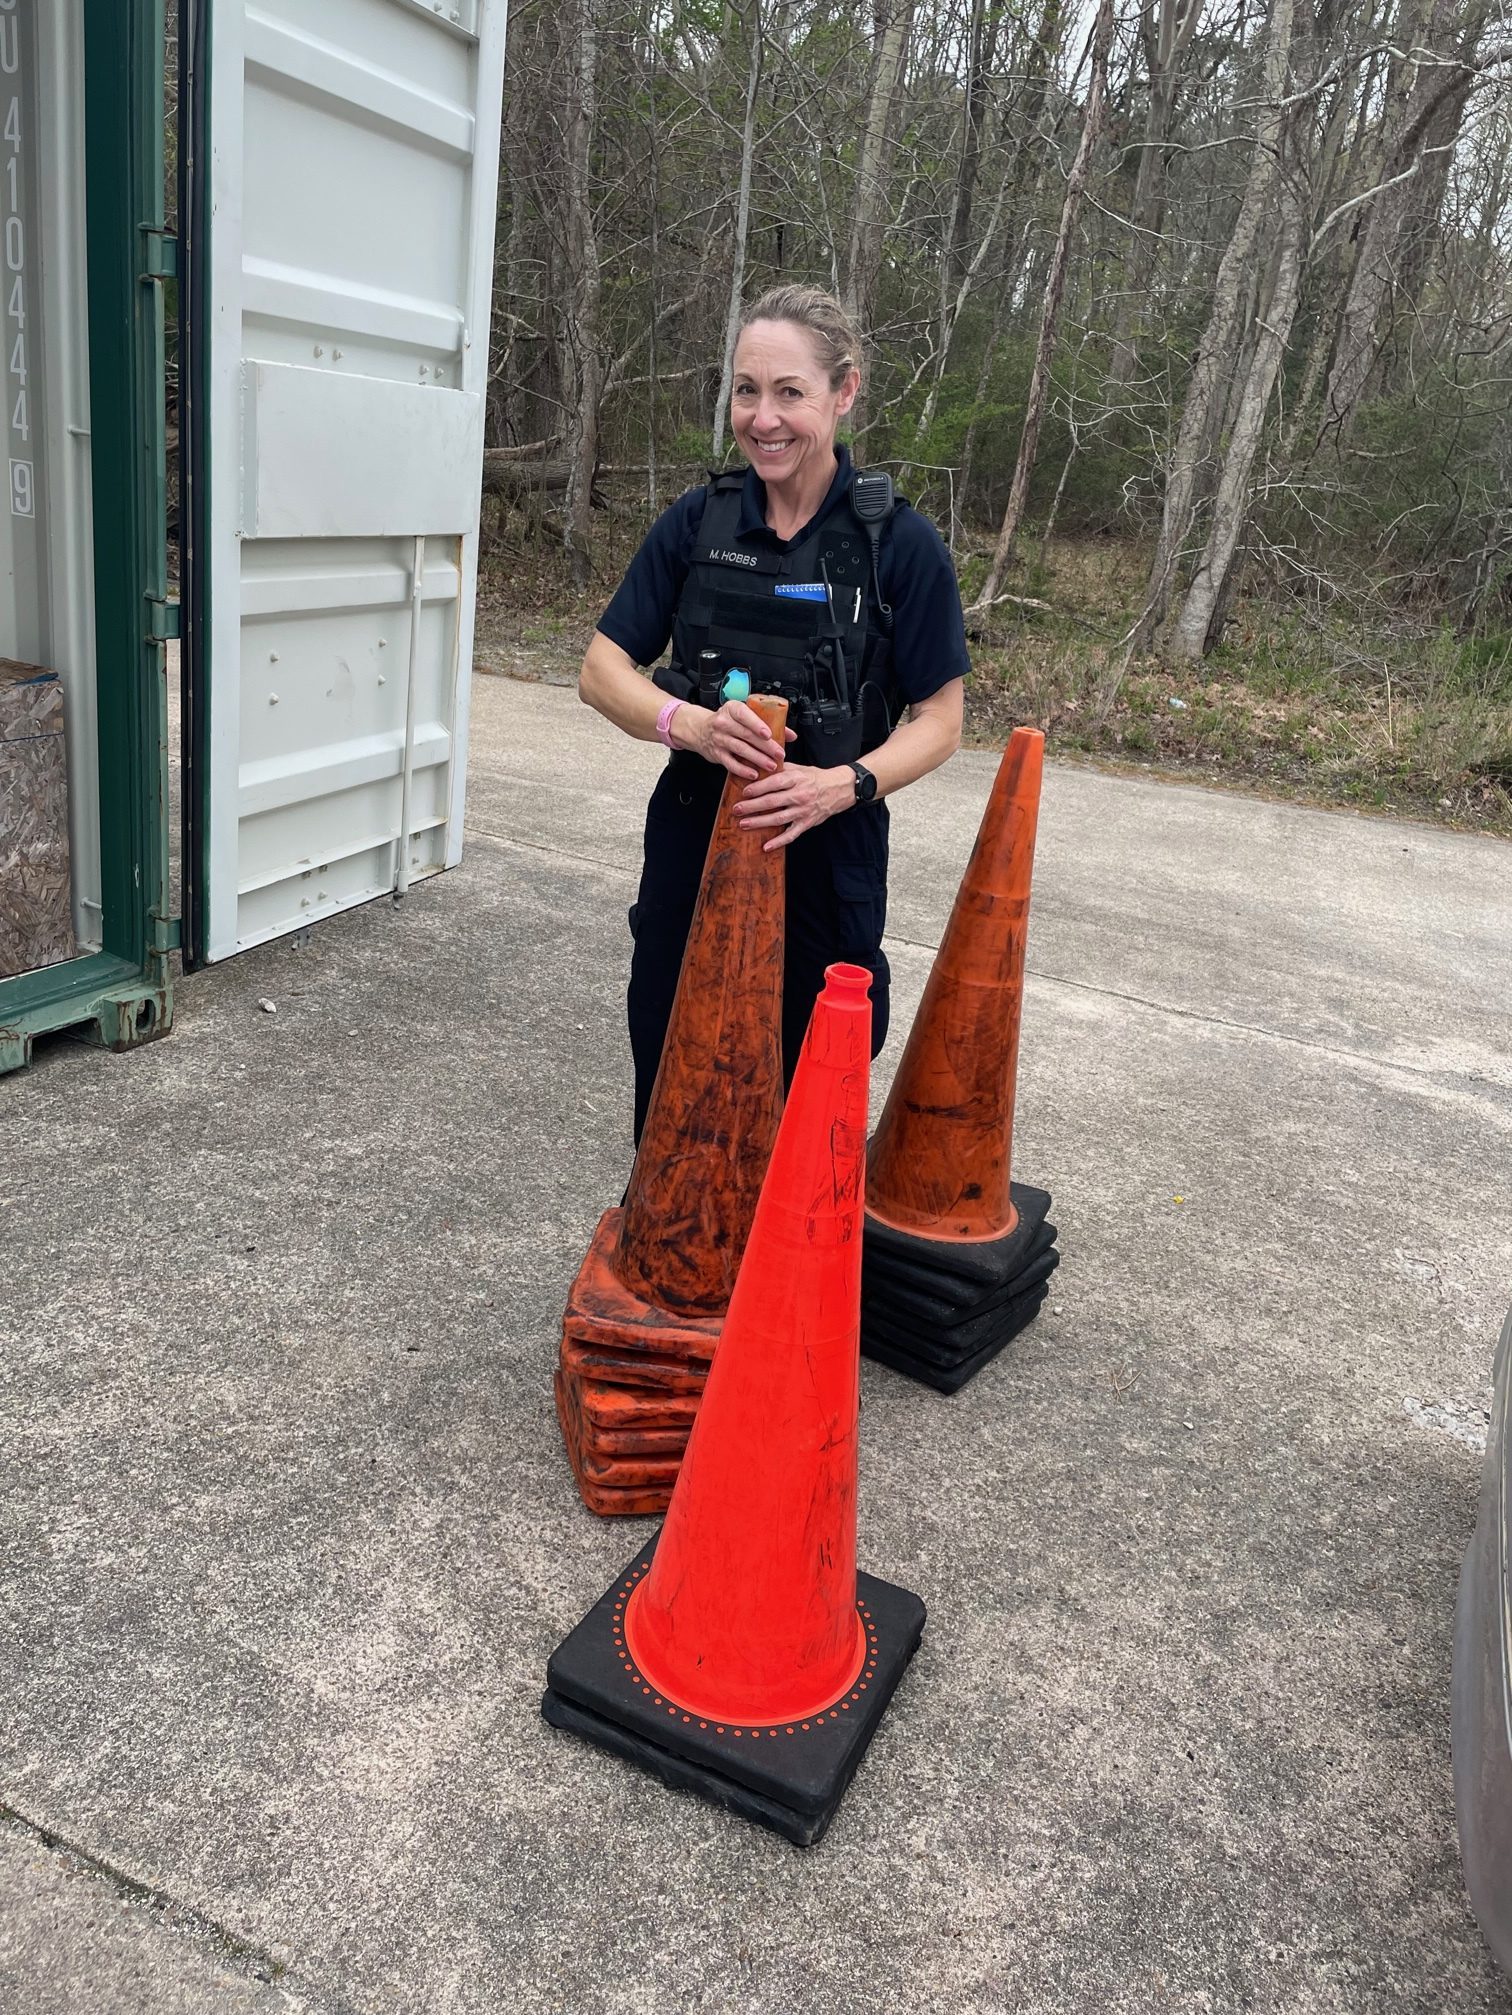 Recruit Hobbs traffic cones